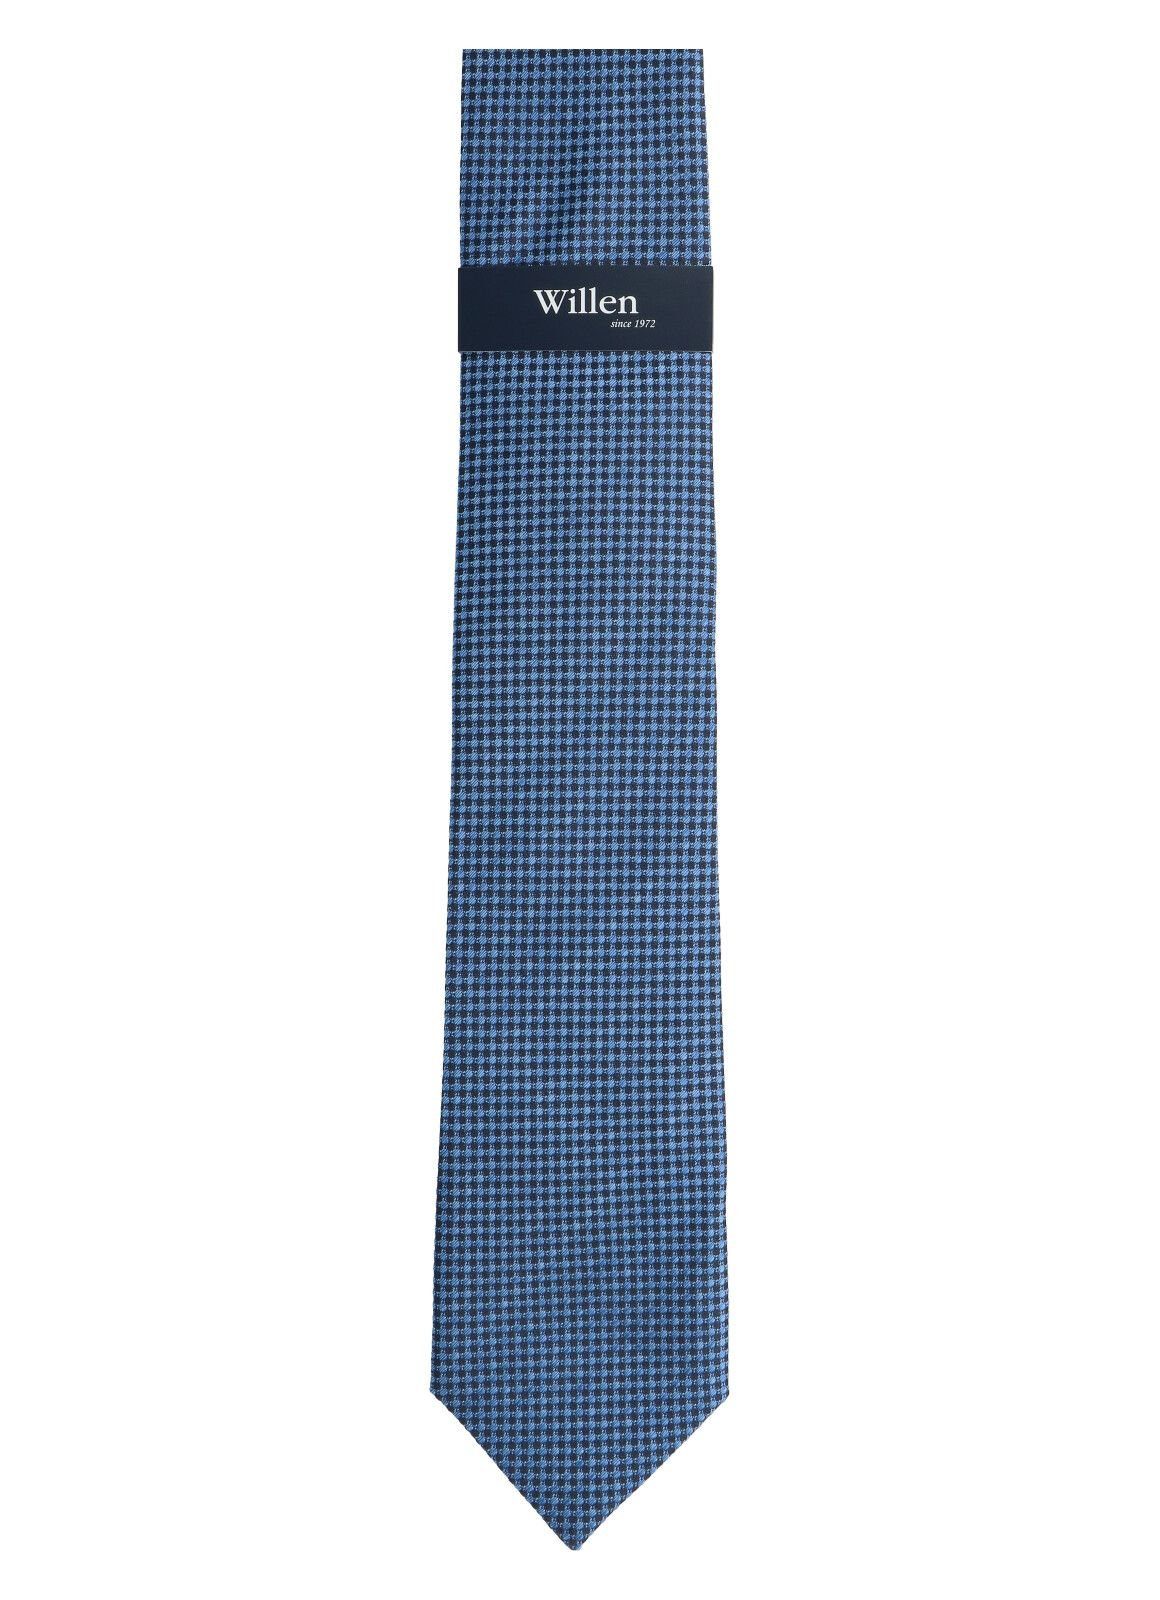 Krawatte WILLEN mittelblau